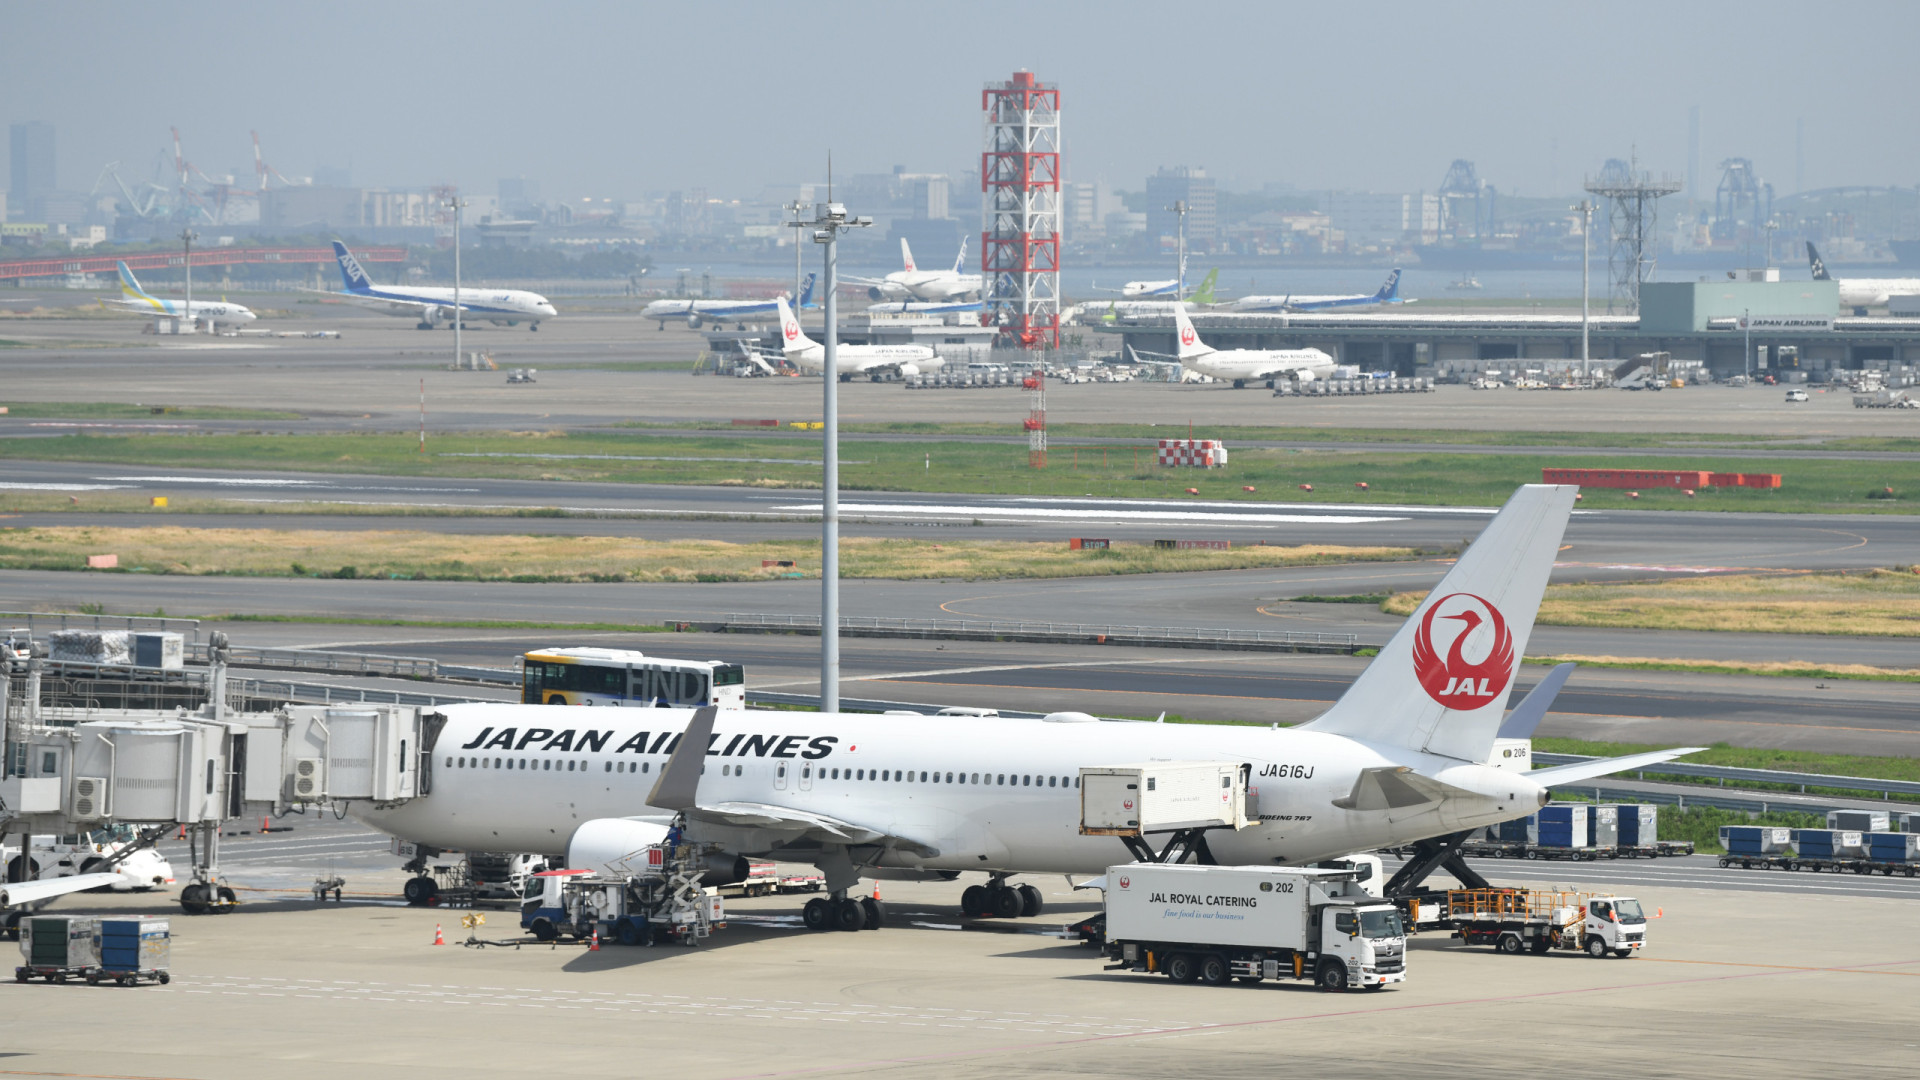 Piloto alcoolizado leva Japan Airlines a cancelar voo nos EUA